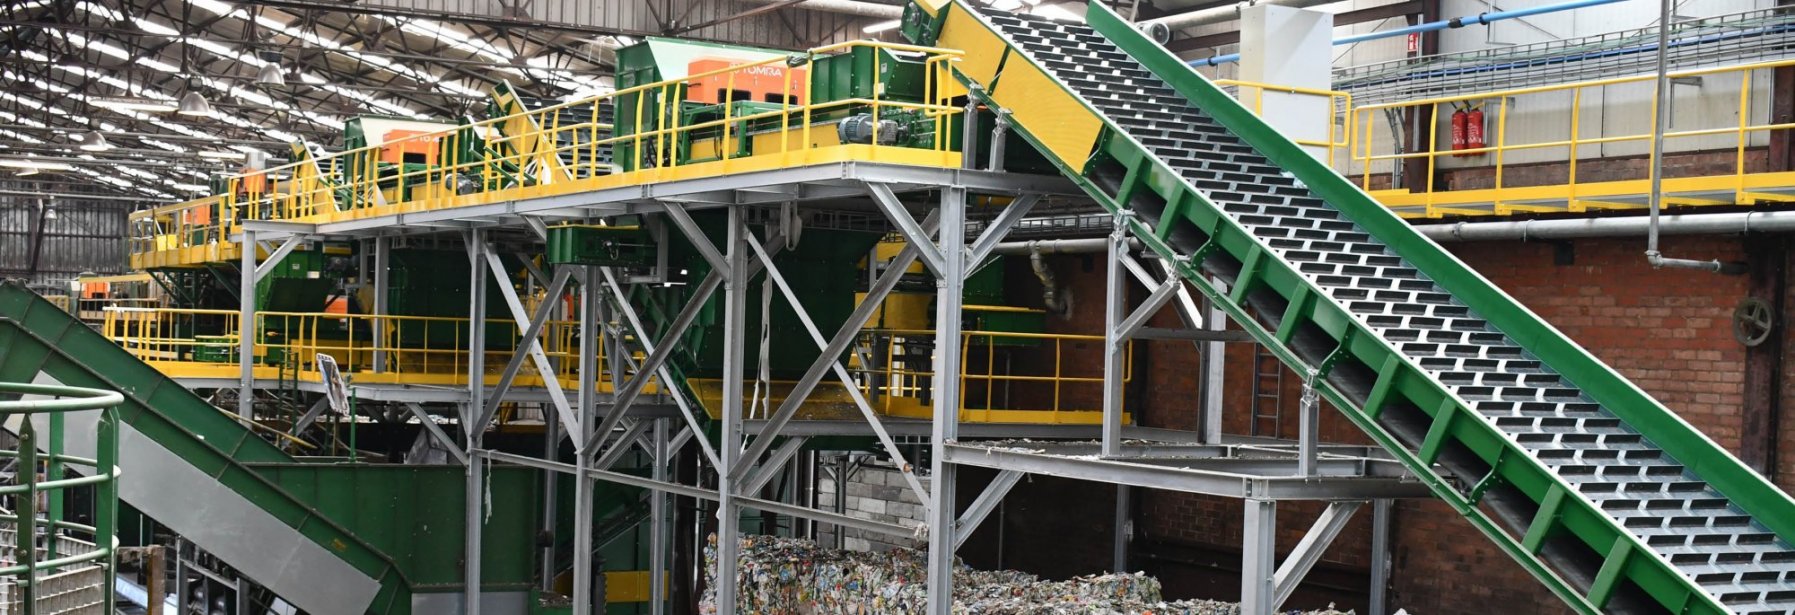 Sorteerlijn afvalrecyclage sorteringsinstallatie s